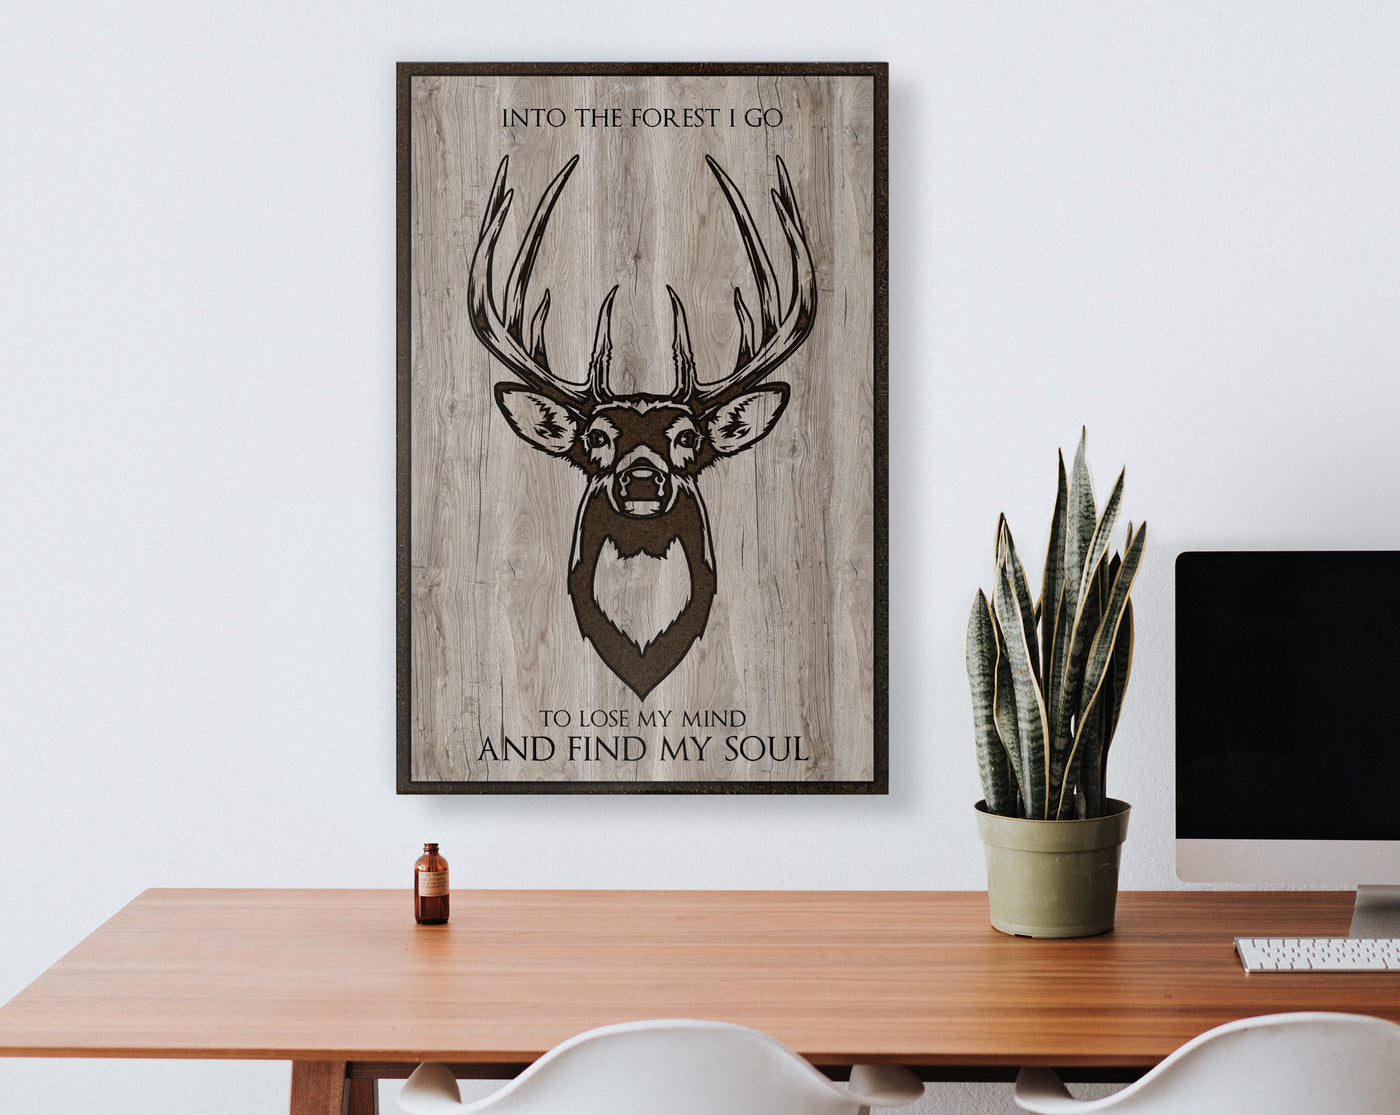 Deer Image